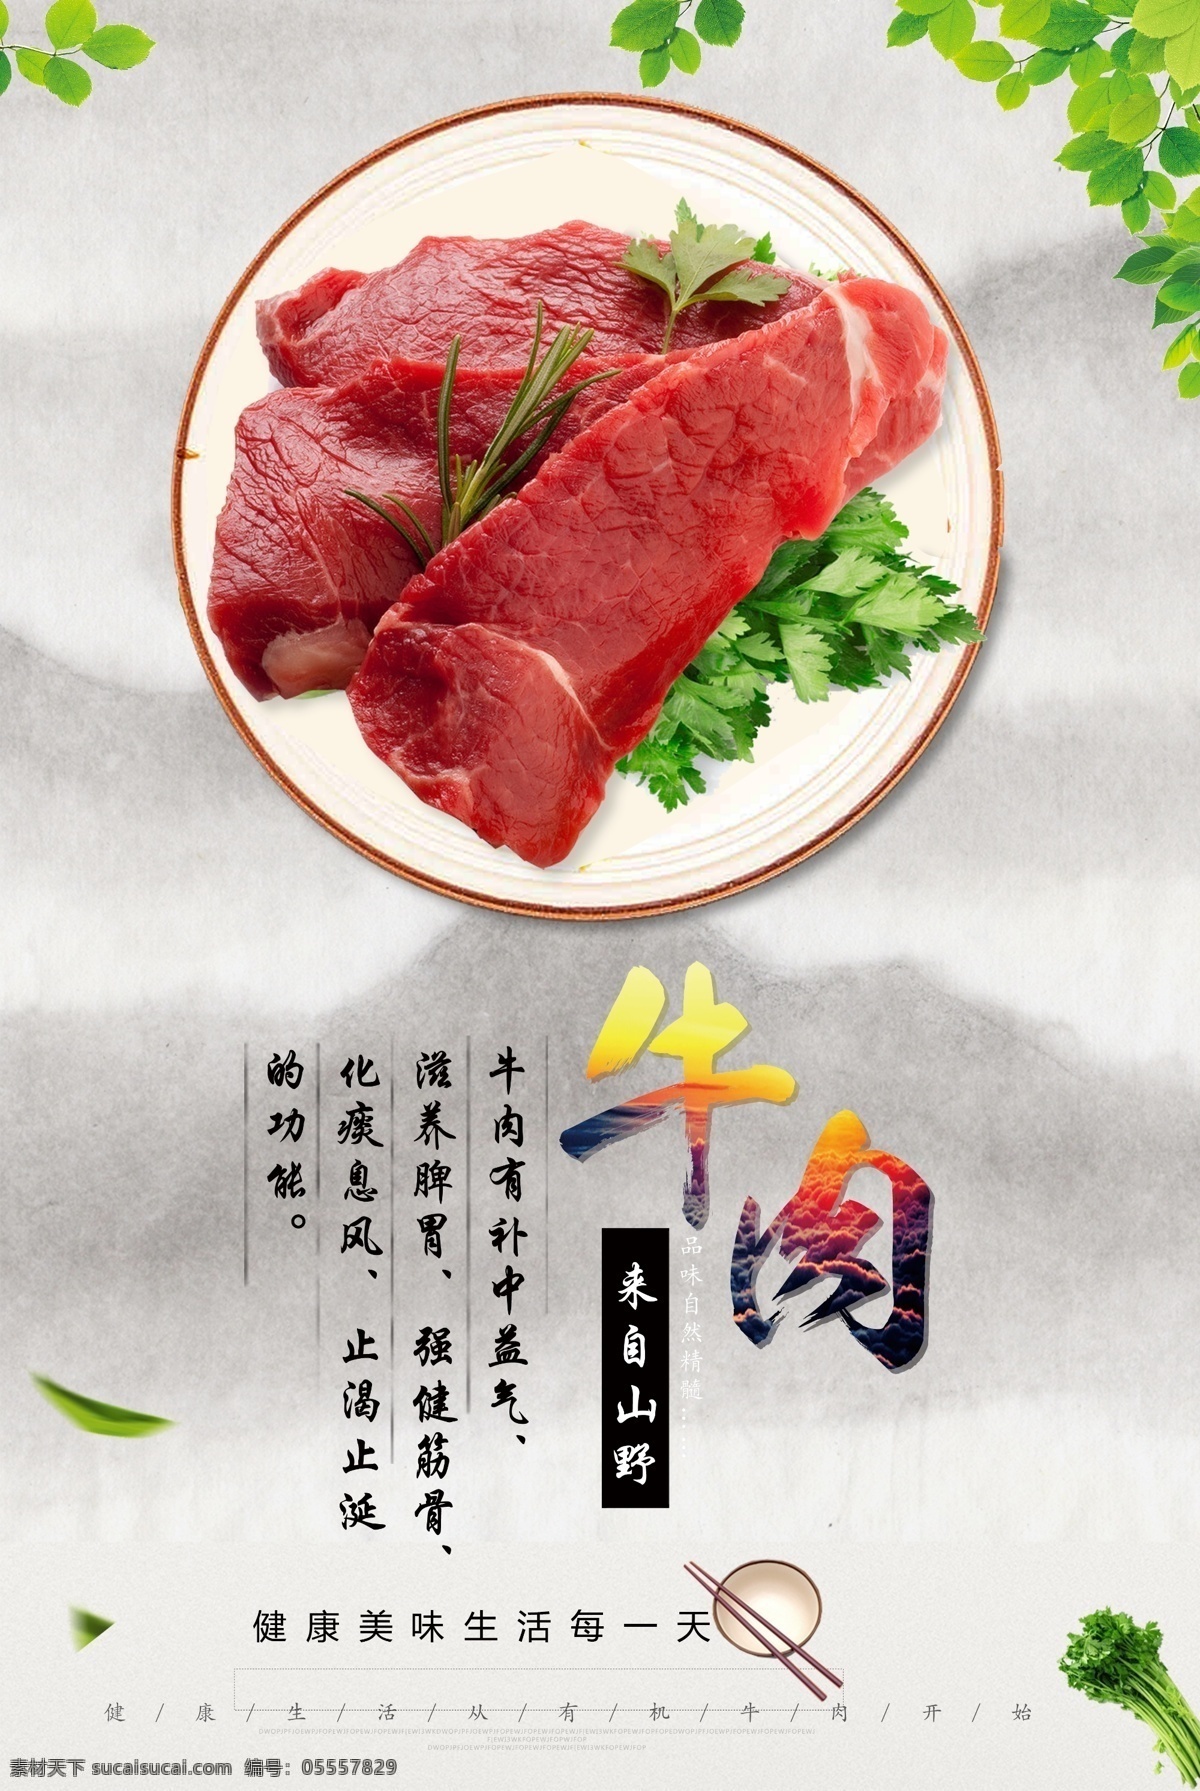 2017 年 青色 清新 有机 牛肉 宣传海报 有机牛肉 树叶 芹菜 美食 食材 牛肉的功效